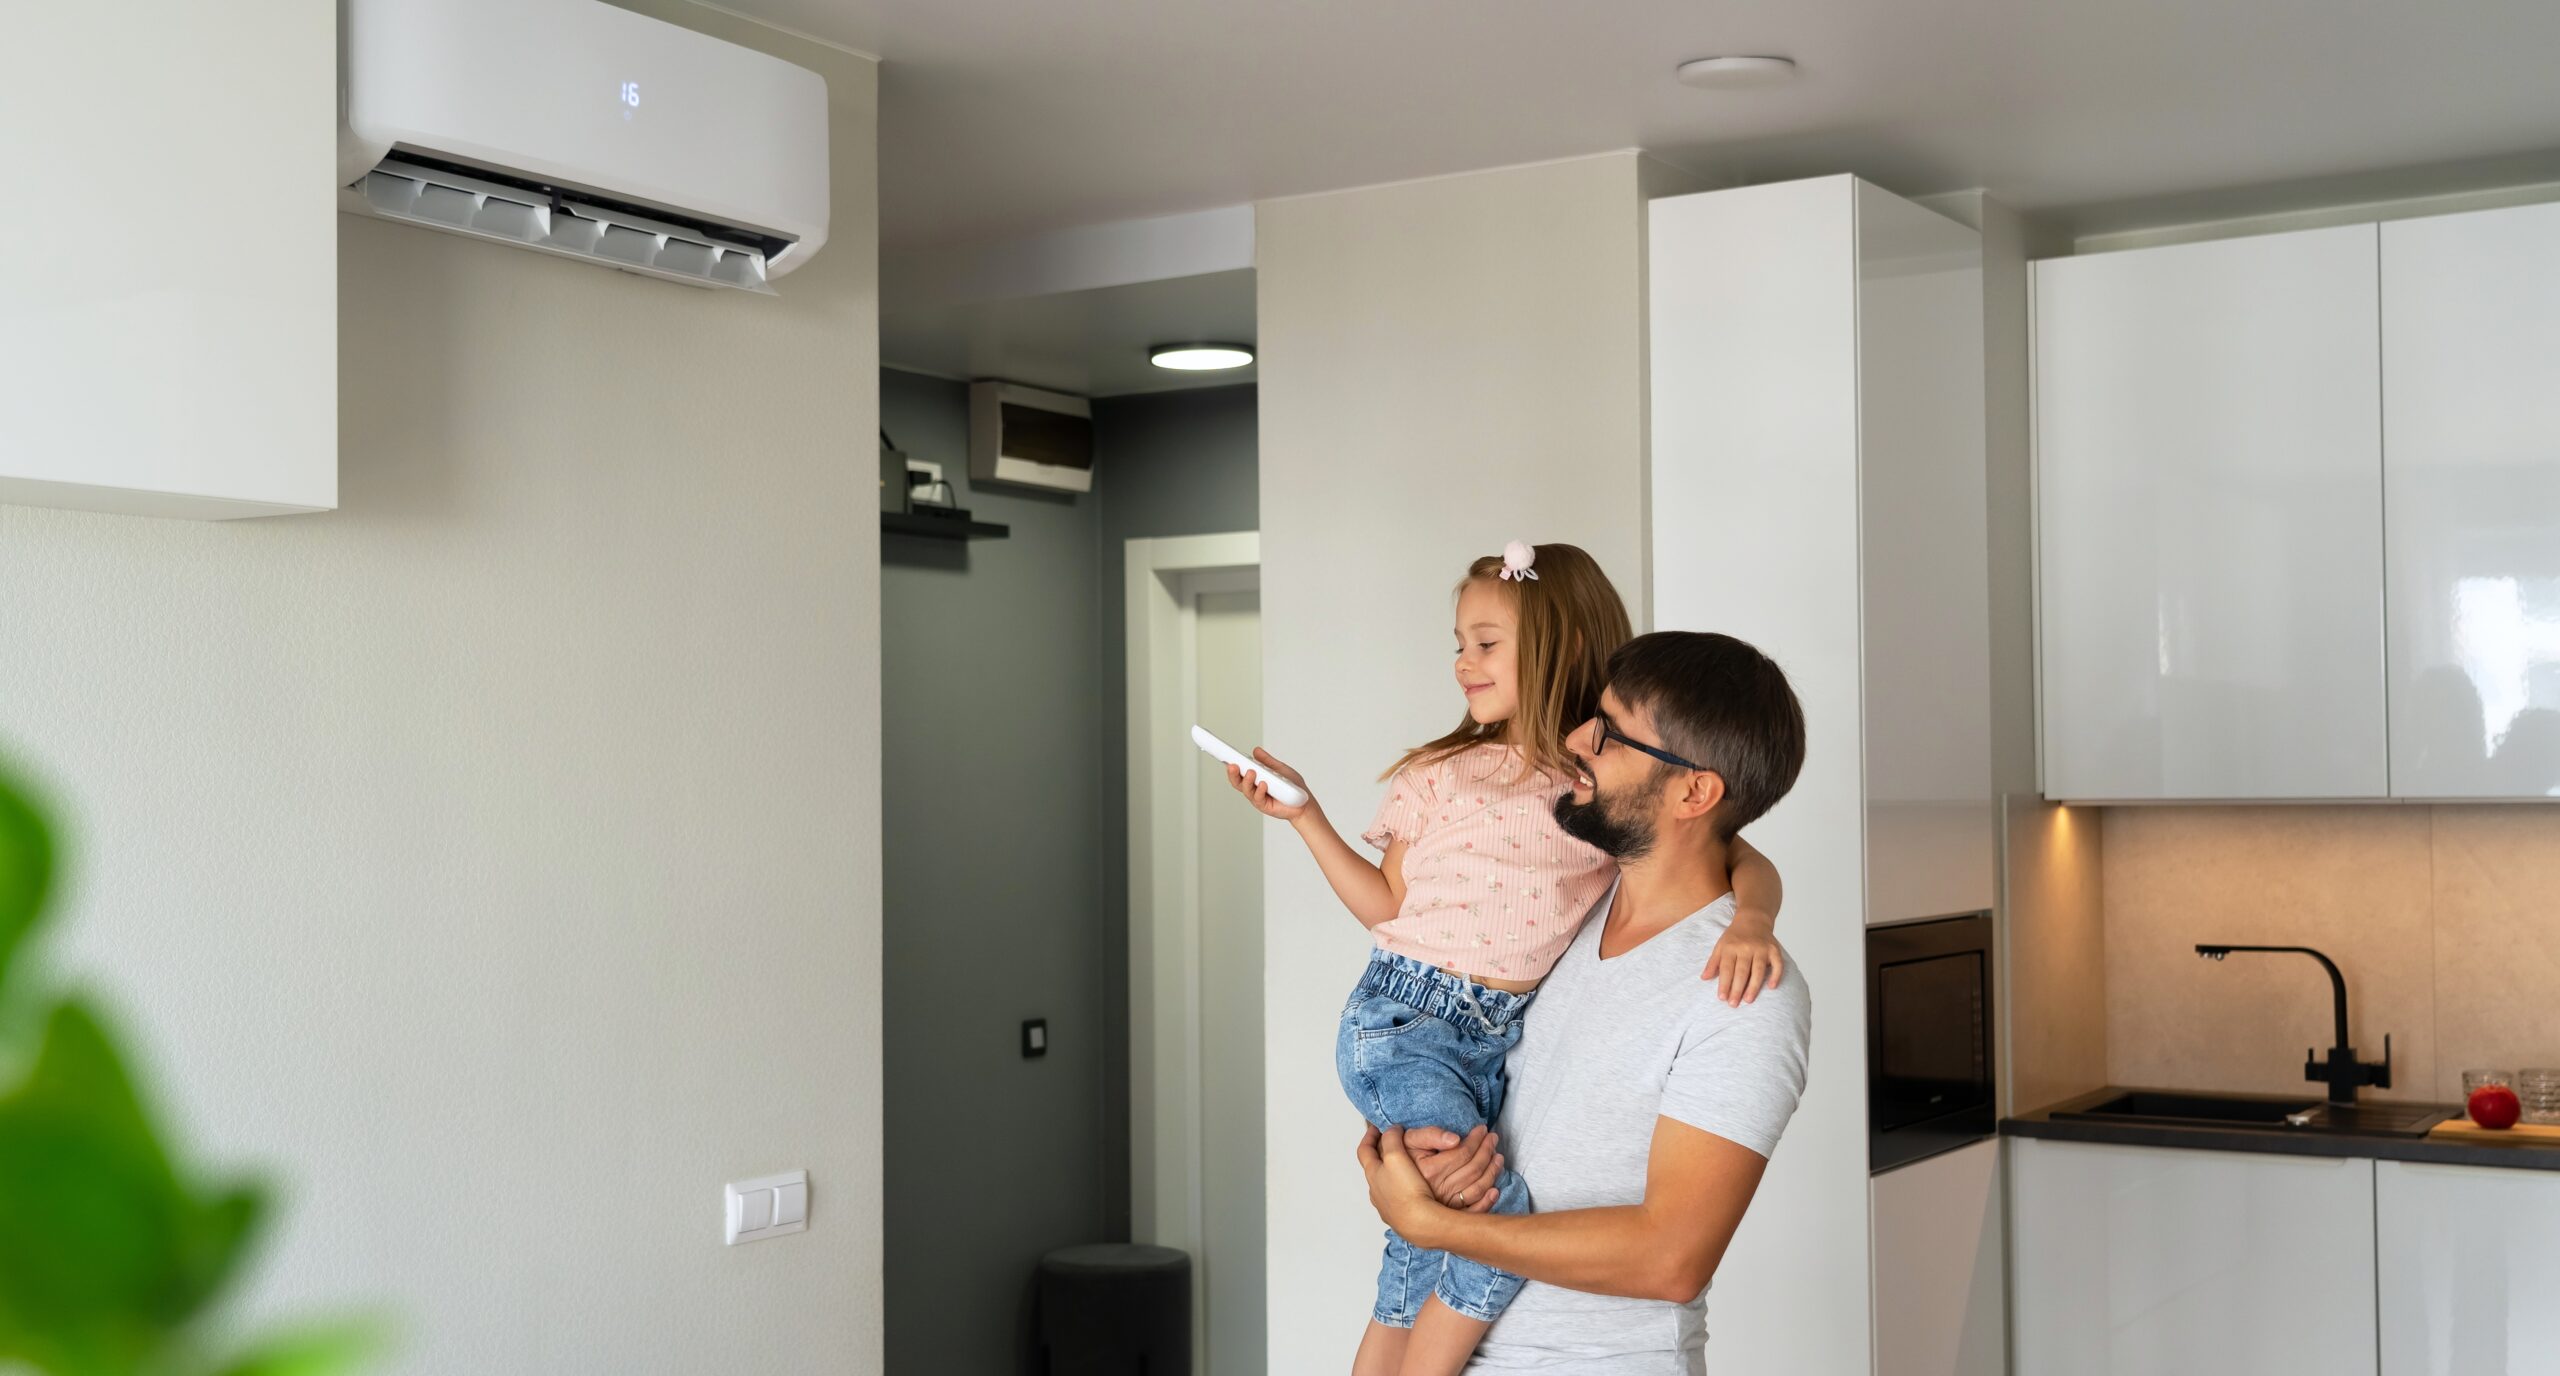 Vader en dochter genieten van duurzaam wooncomfort dankzij hun airco toestel op zonnepanelen.